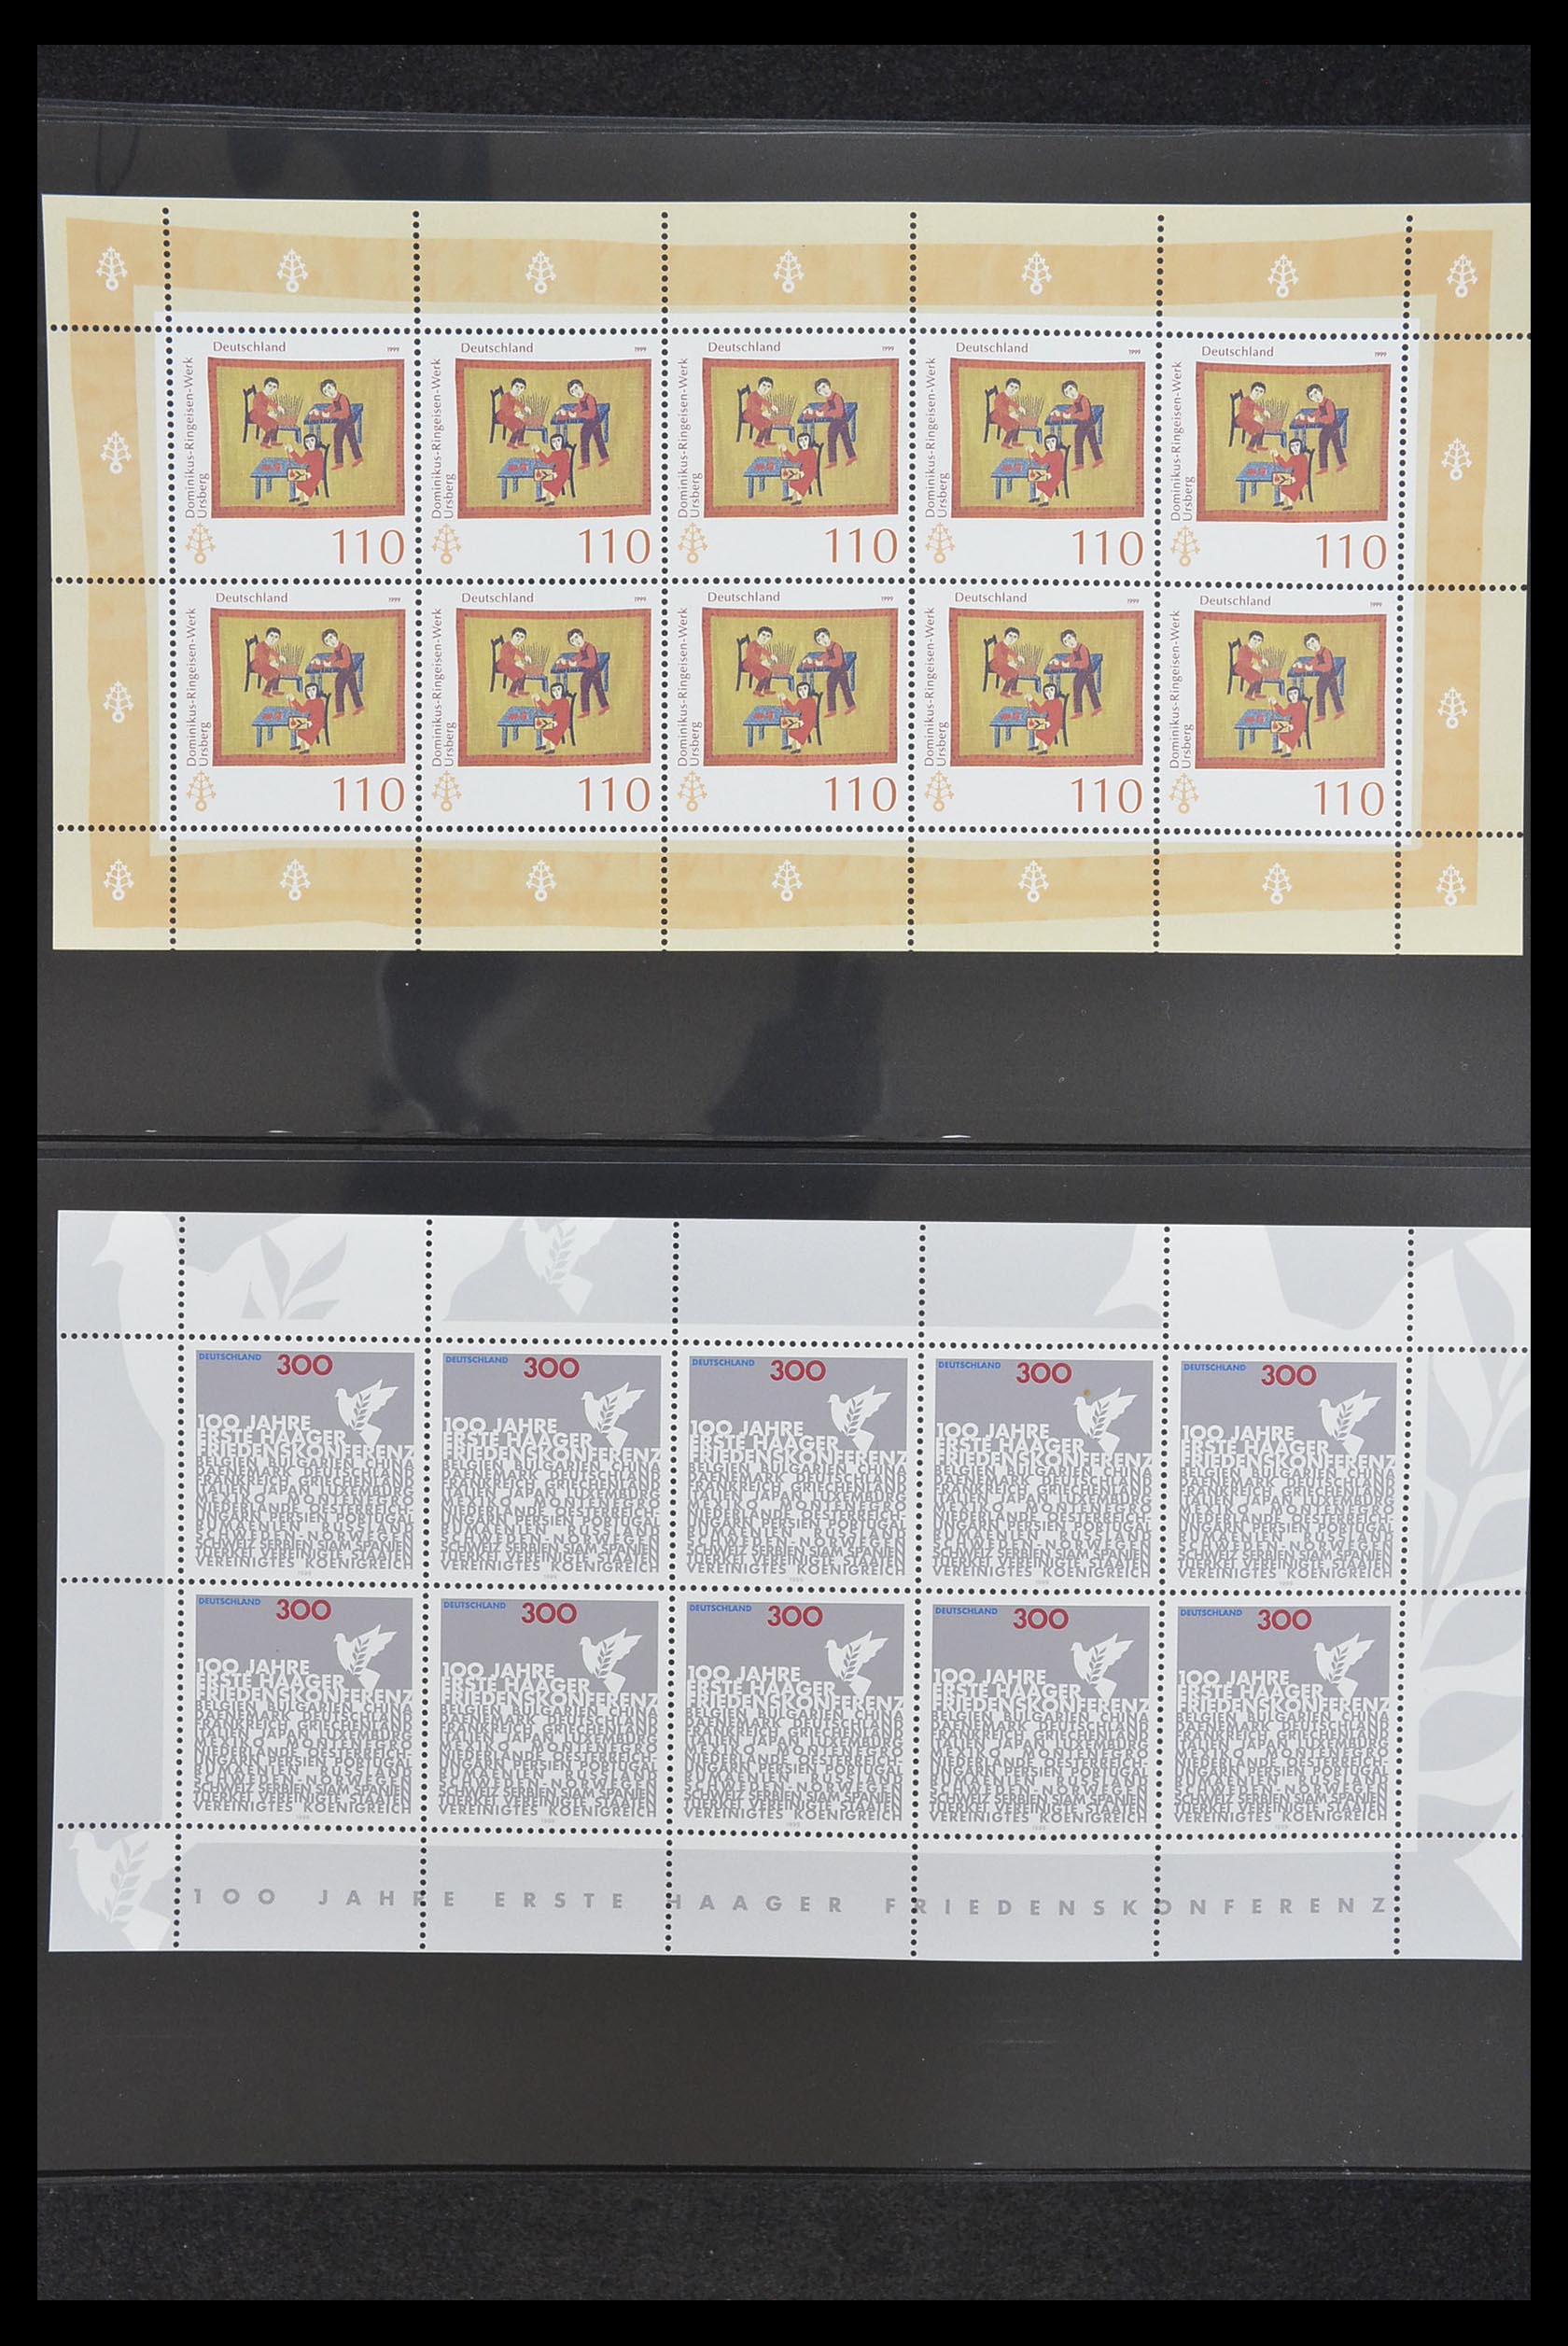 33936 137 - Stamp collection 33936 Bundespost kleinbogen 1994-2000.